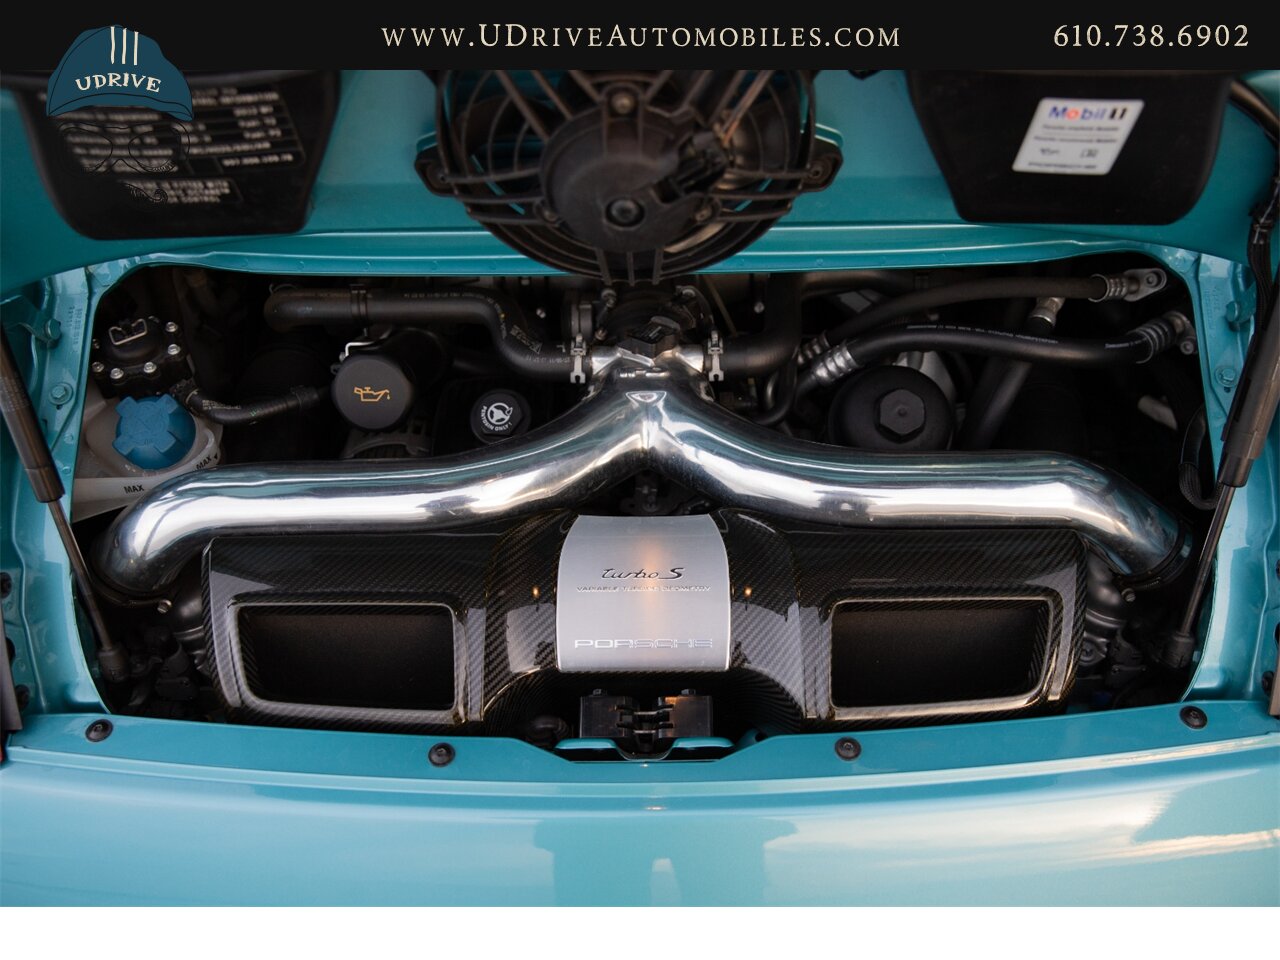 2012 Porsche 911 Turbo S 997.2 RARE Ipanema Blue 13k Miles  Vent Sts Carbon Fiber Pntd Exter Pkg Blk Centerlock Whls $173k MSRP - Photo 53 - West Chester, PA 19382